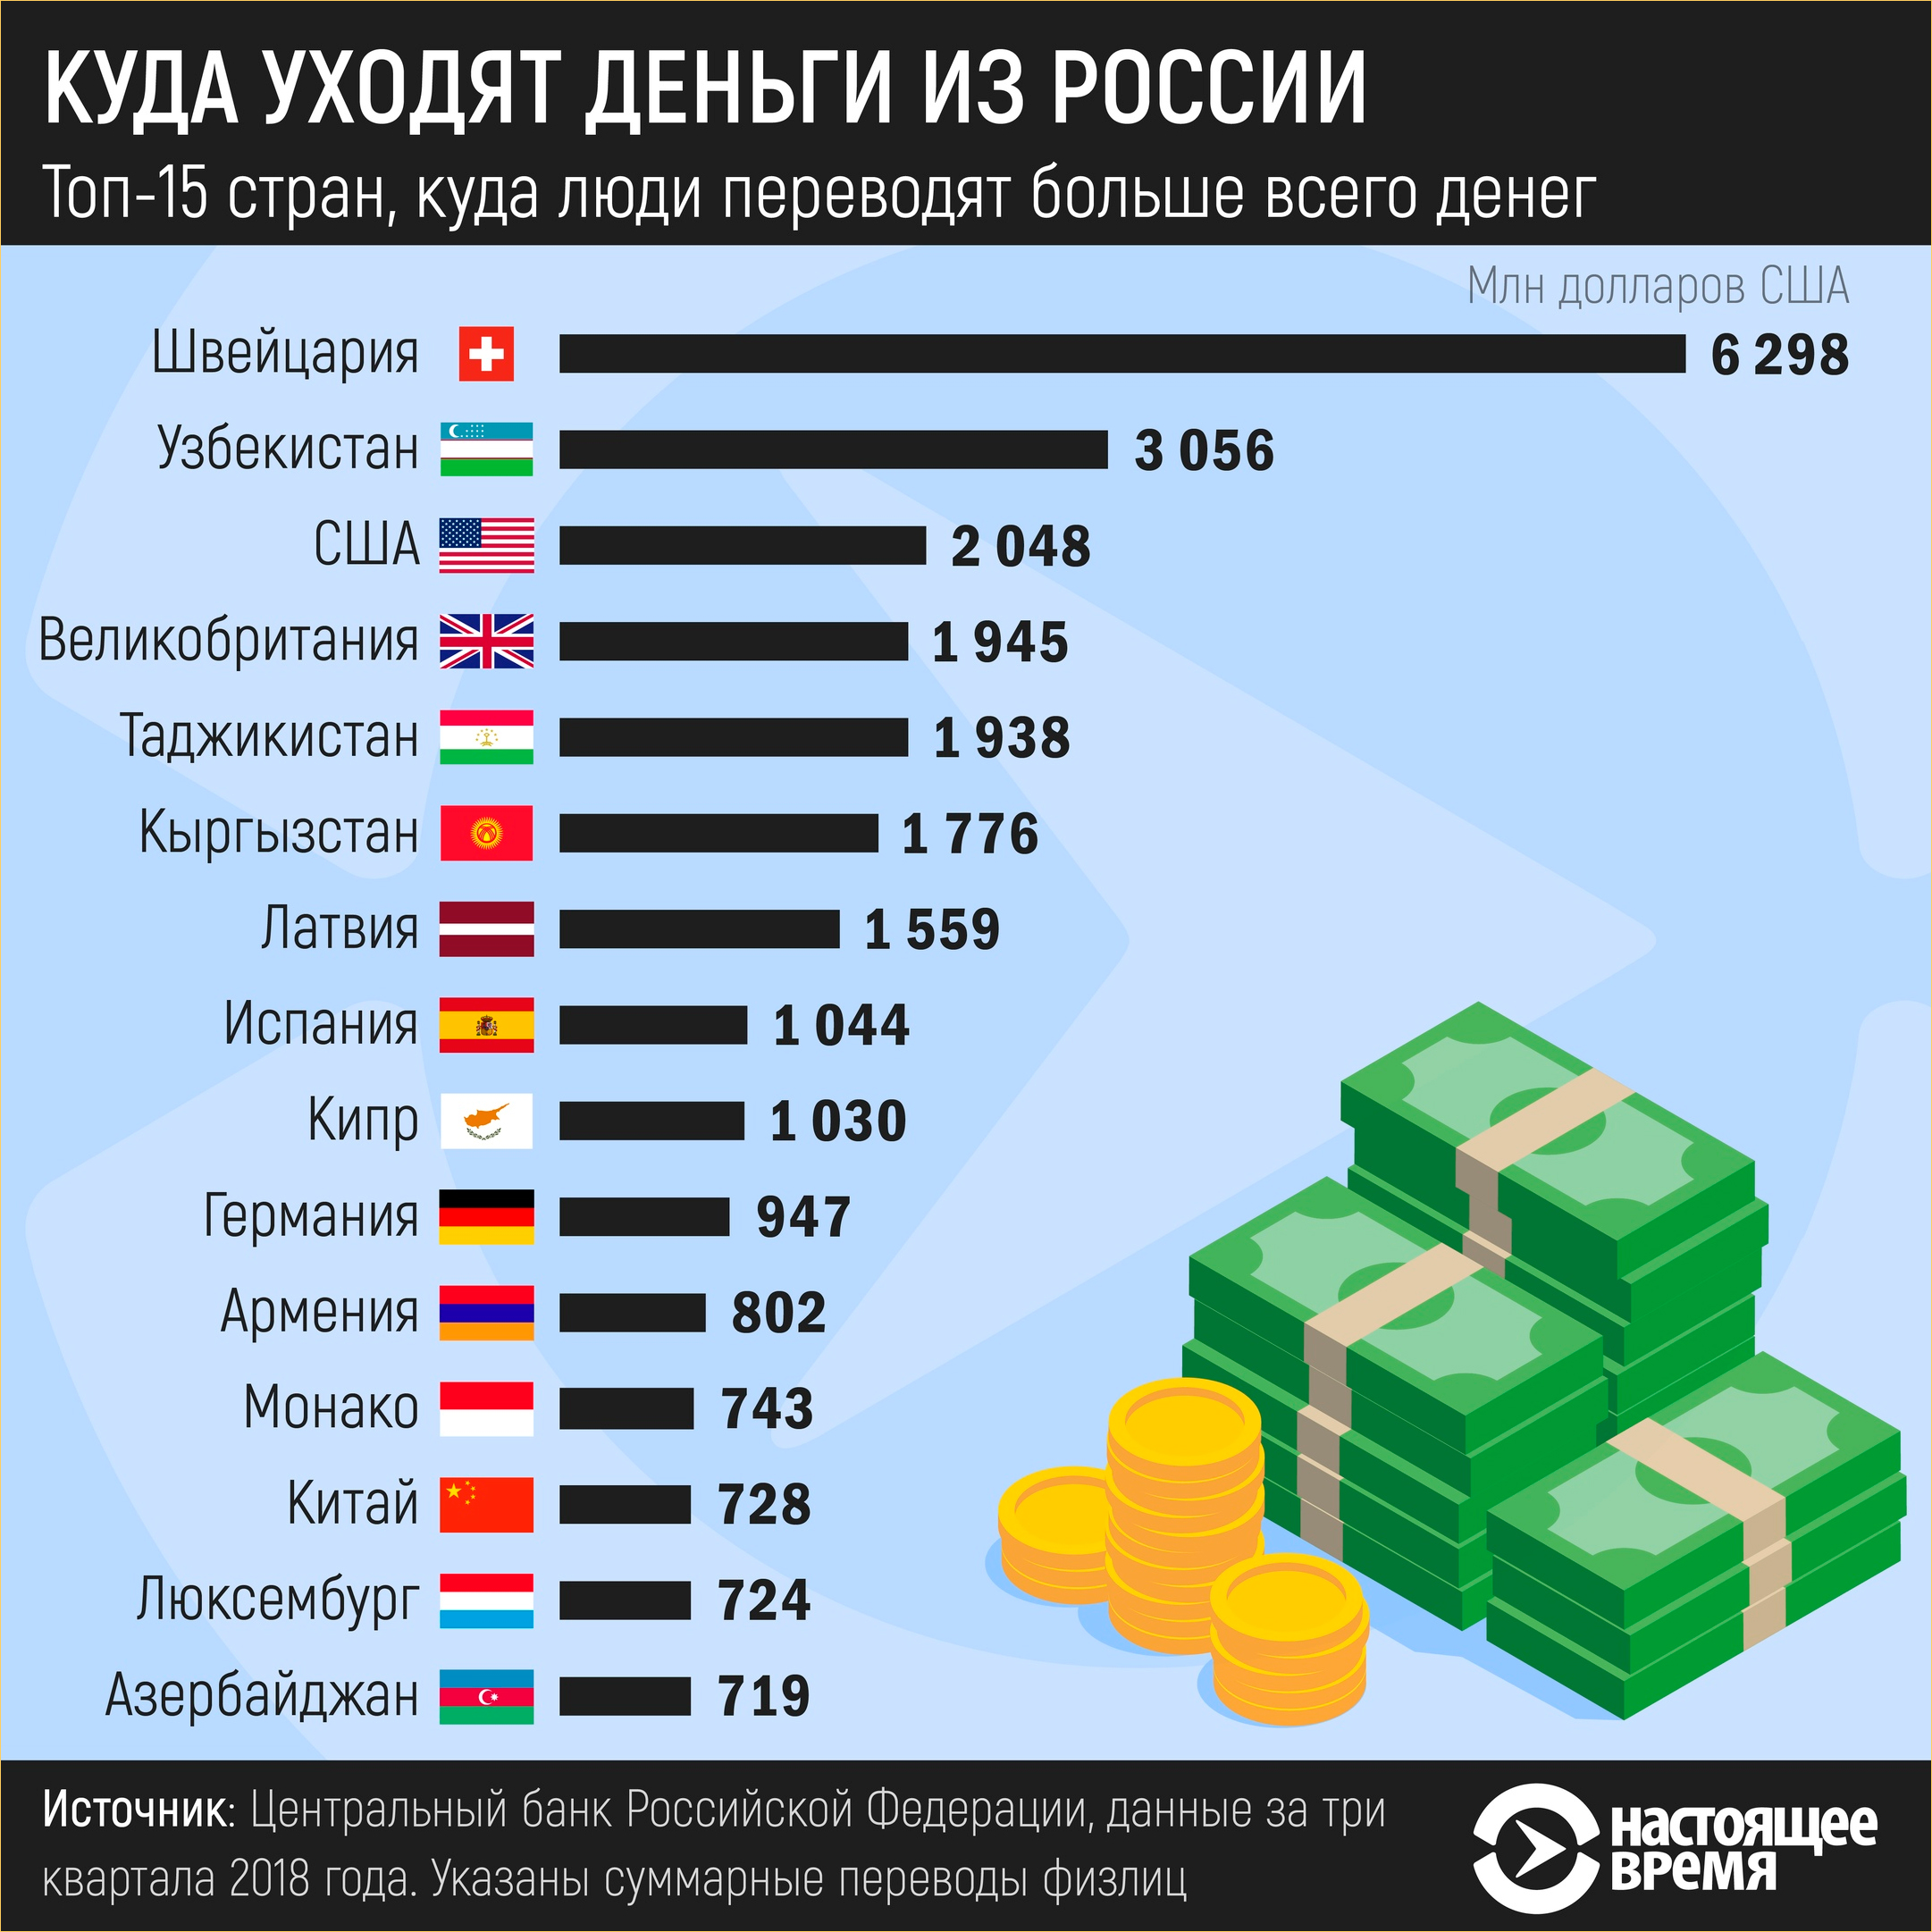 Сколько всего в россии. Сколько денег в стране в России. Сколько денег в России. Сколько денег у стран. Количество денег в странах.